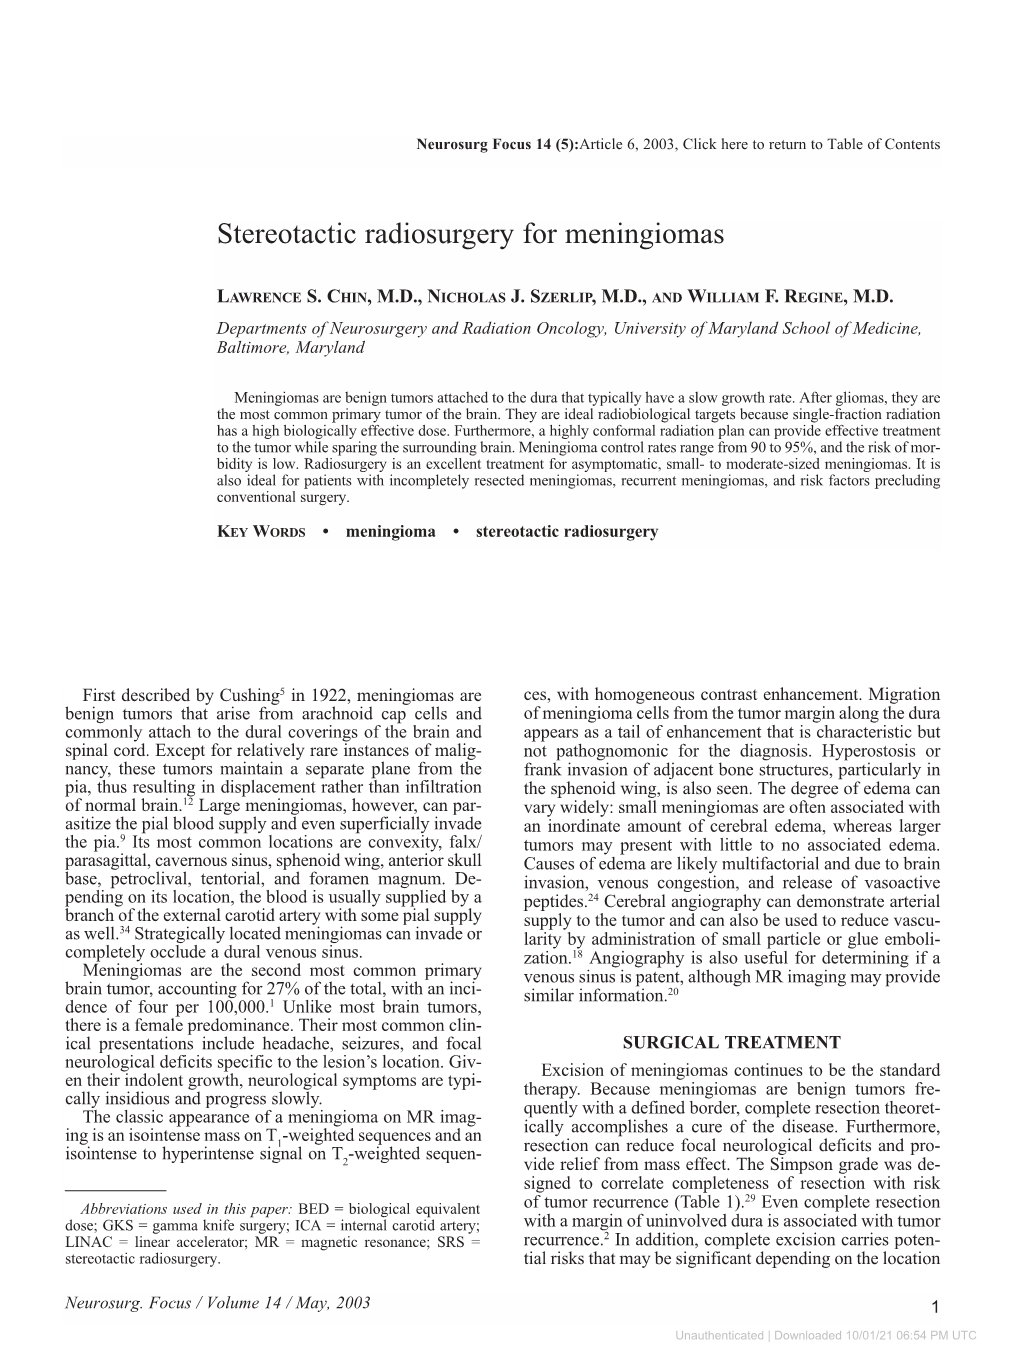 Stereotactic Radiosurgery for Meningiomas